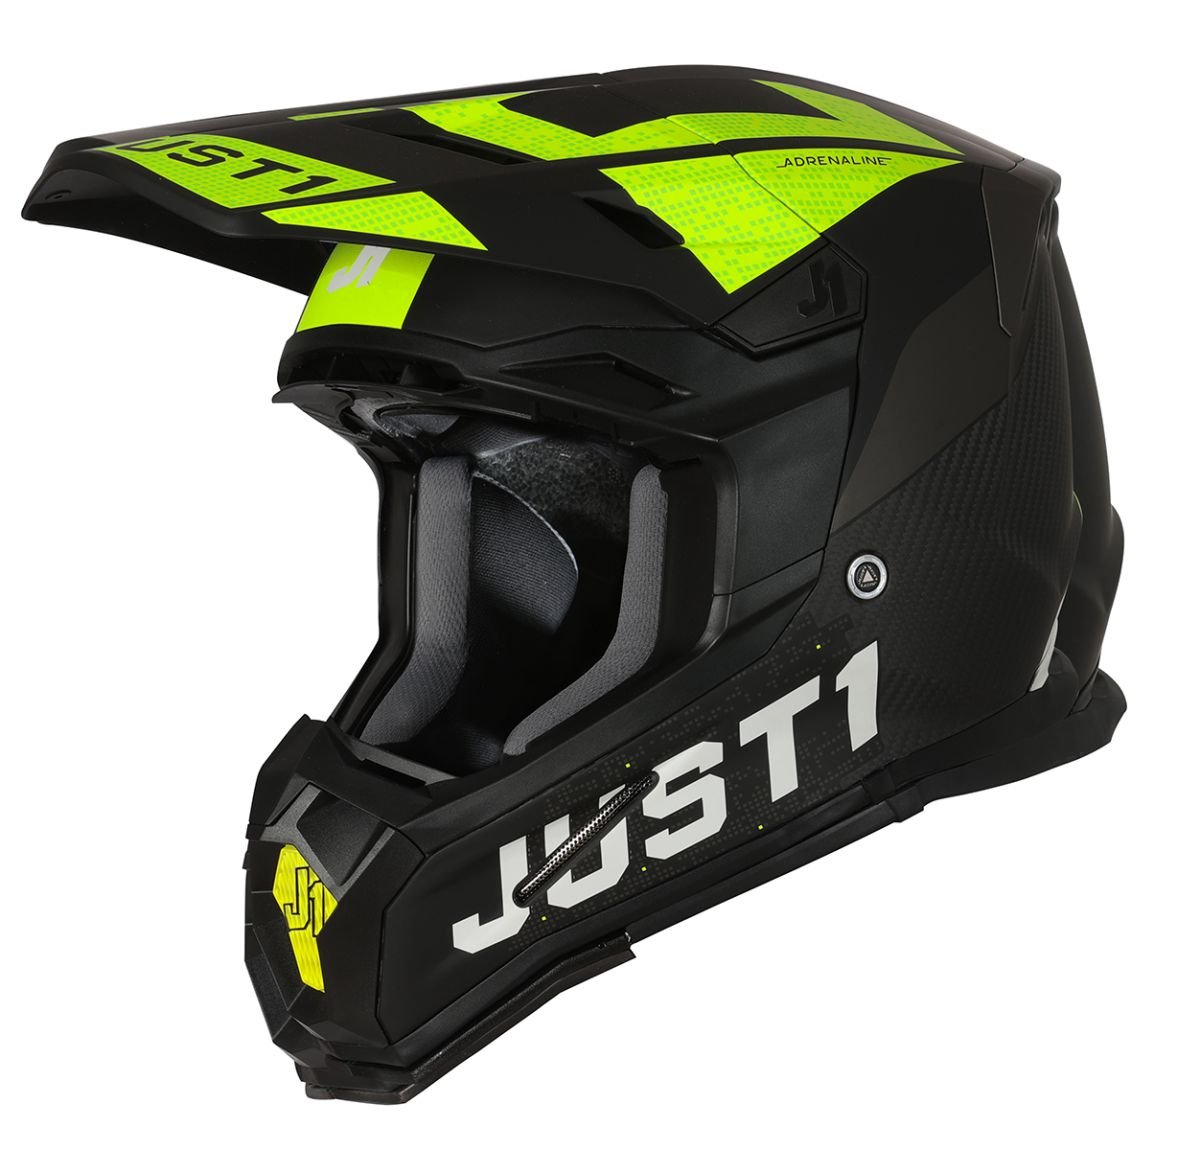 Image of Just1 Helmet J-22 Adrenaline Black Yellow Fluo Carbon Matt Offroad Helmet Talla XS